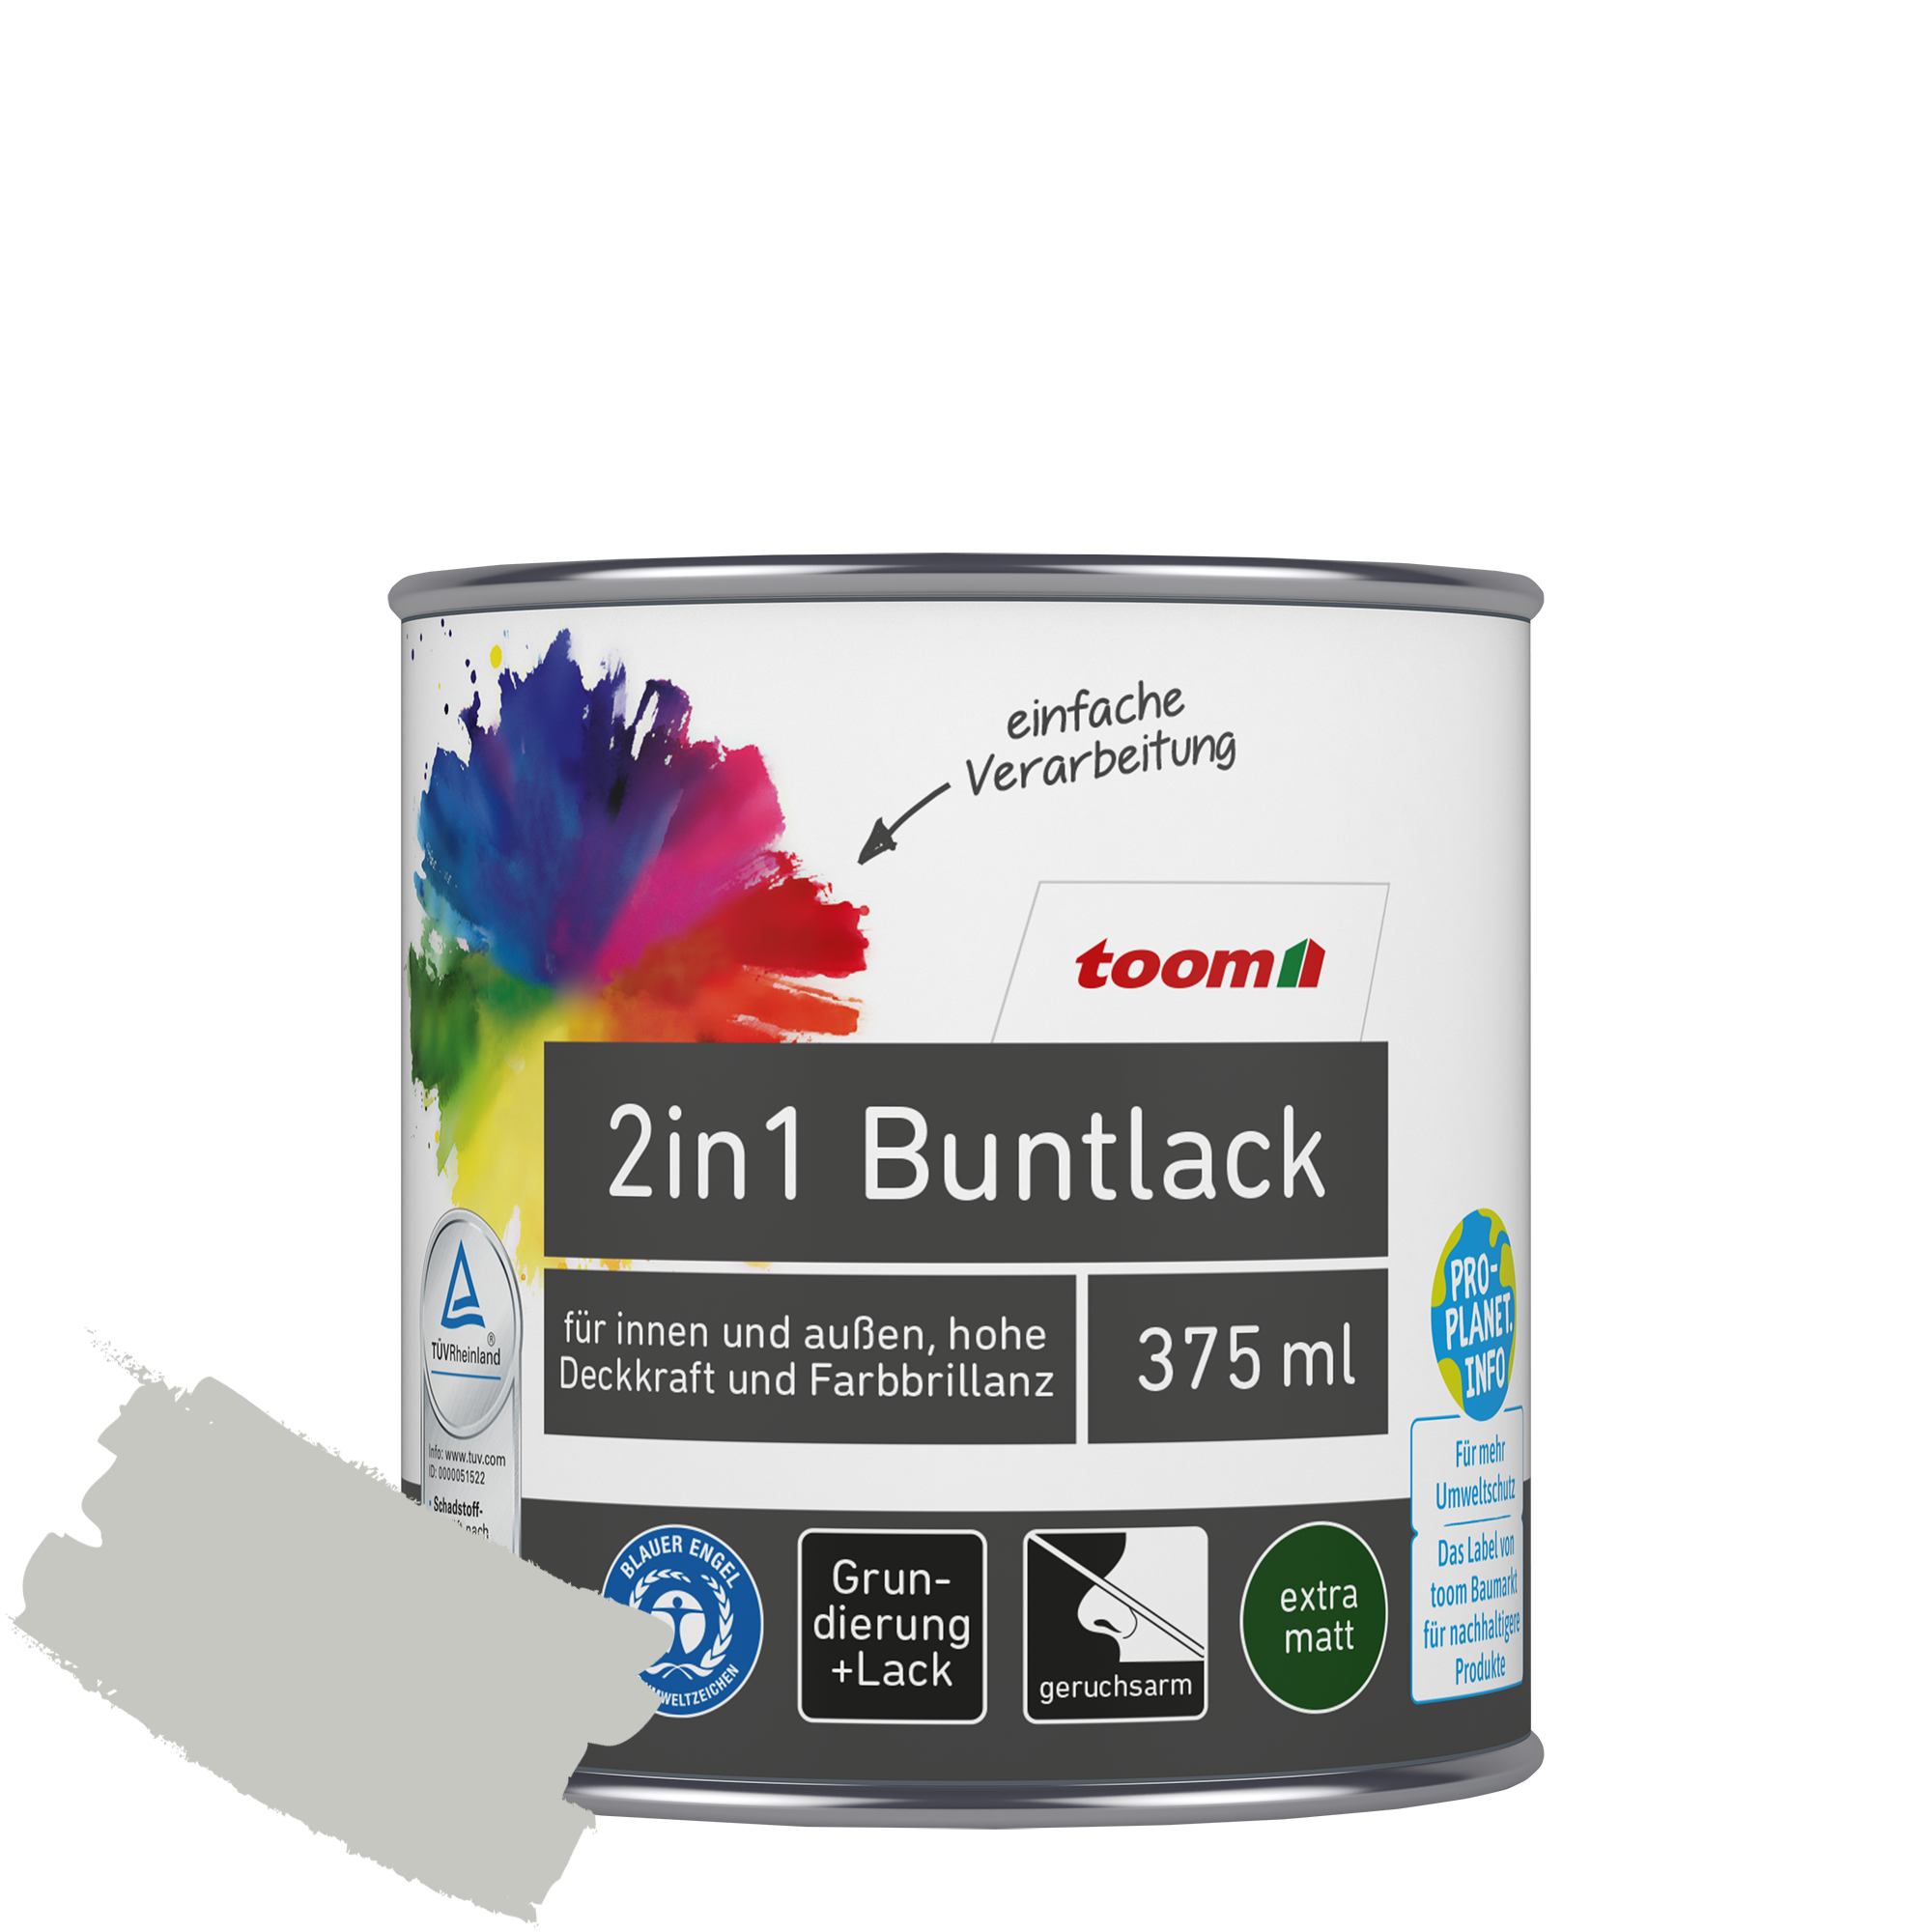 2in1 Buntlack 'Mondschein' lichtgrau matt 375 ml + product picture